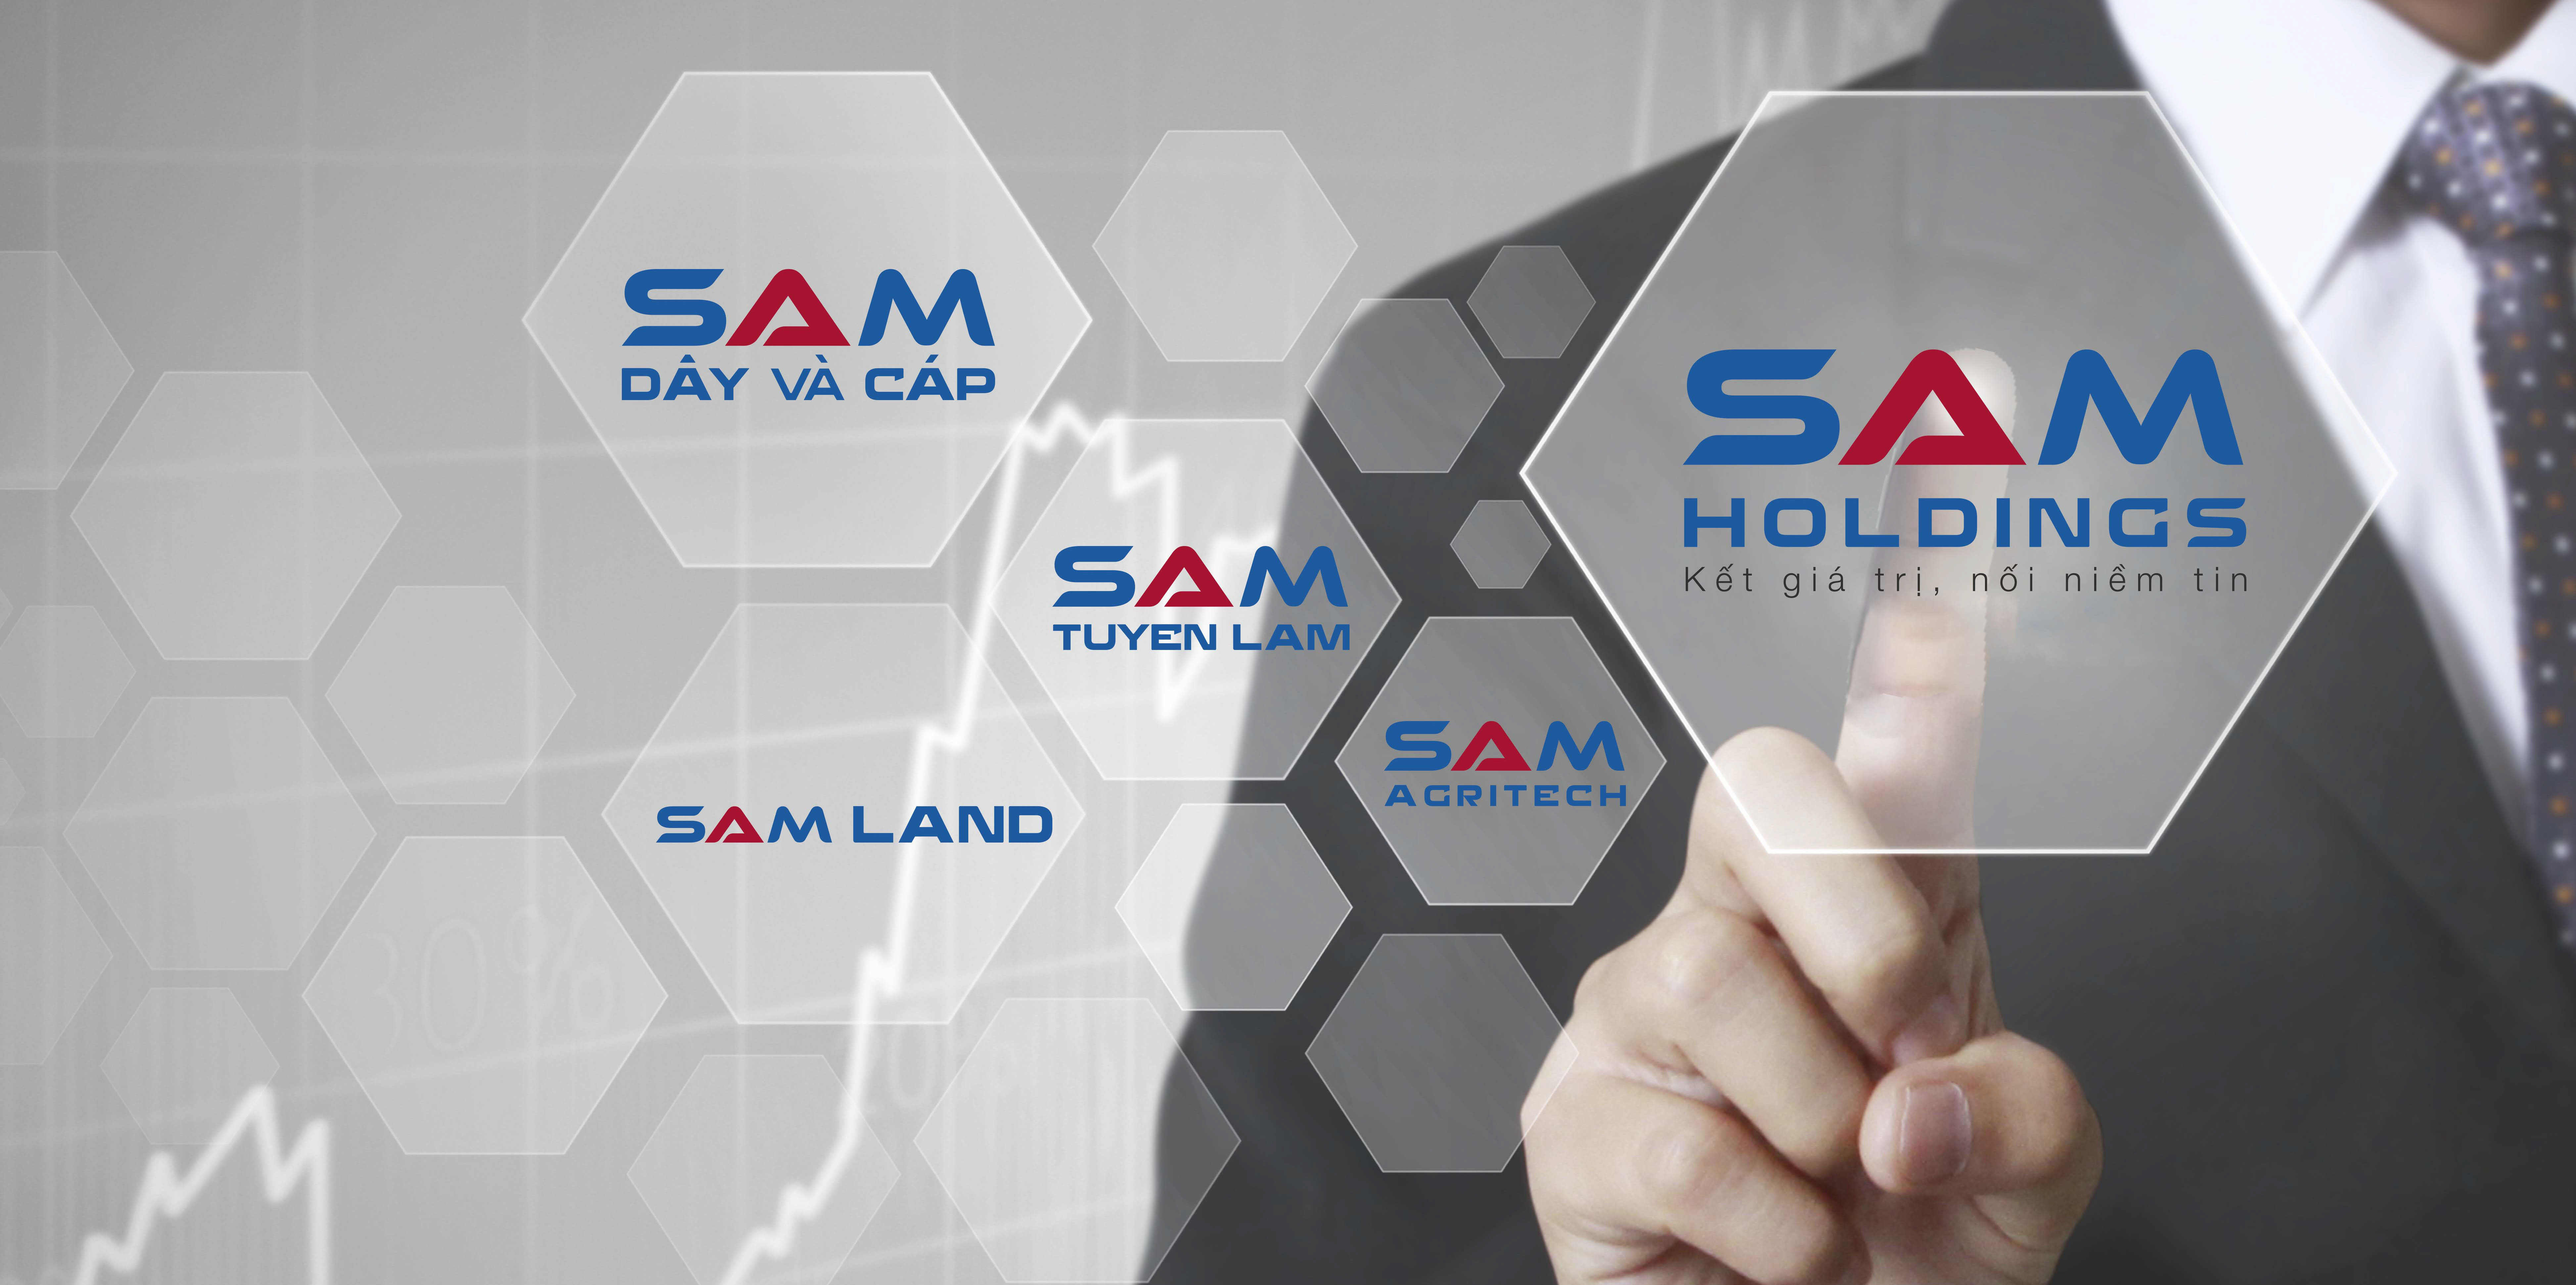 SACOM chính thức đổi tên thành Công ty Cổ phần SAM Holdings